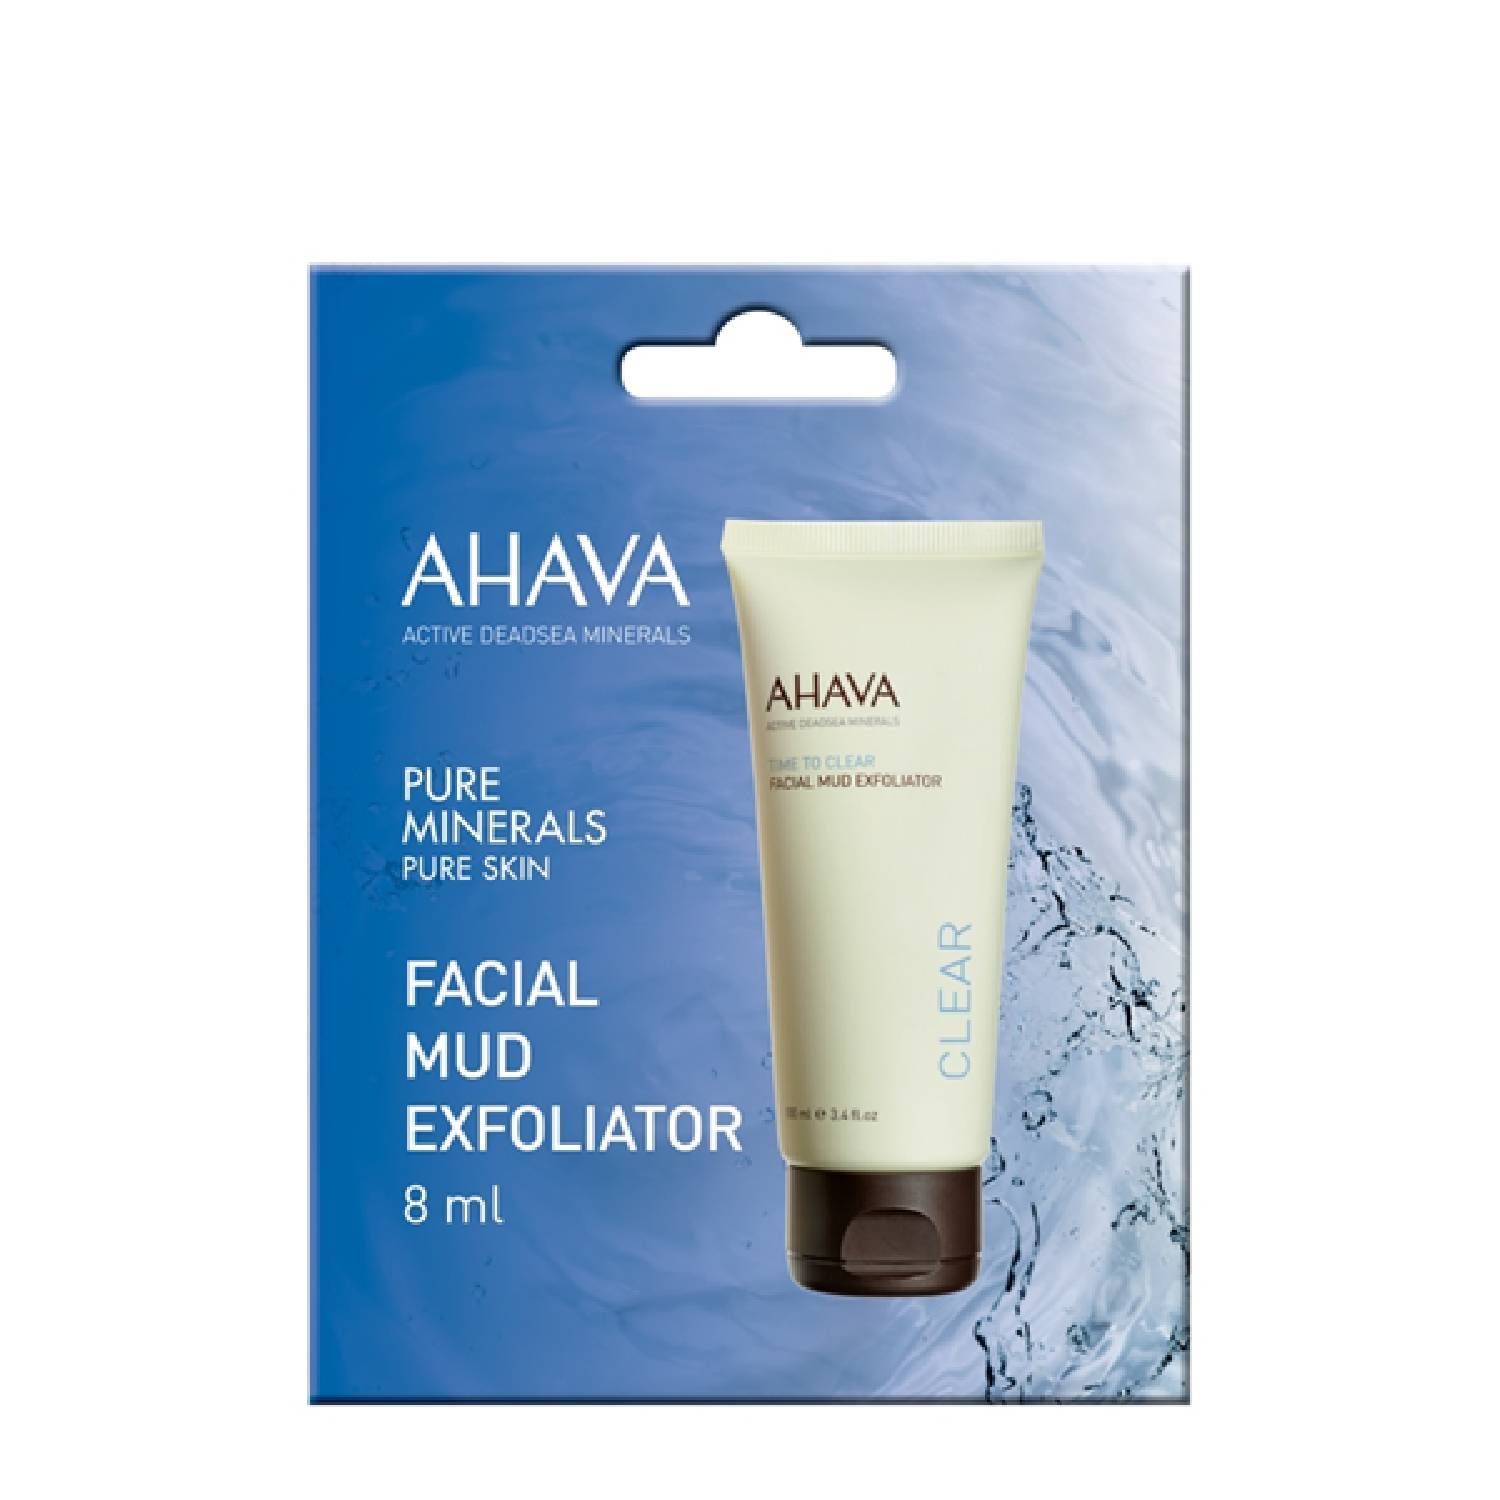 Ahava Facial Mud Exfoliator 8ml